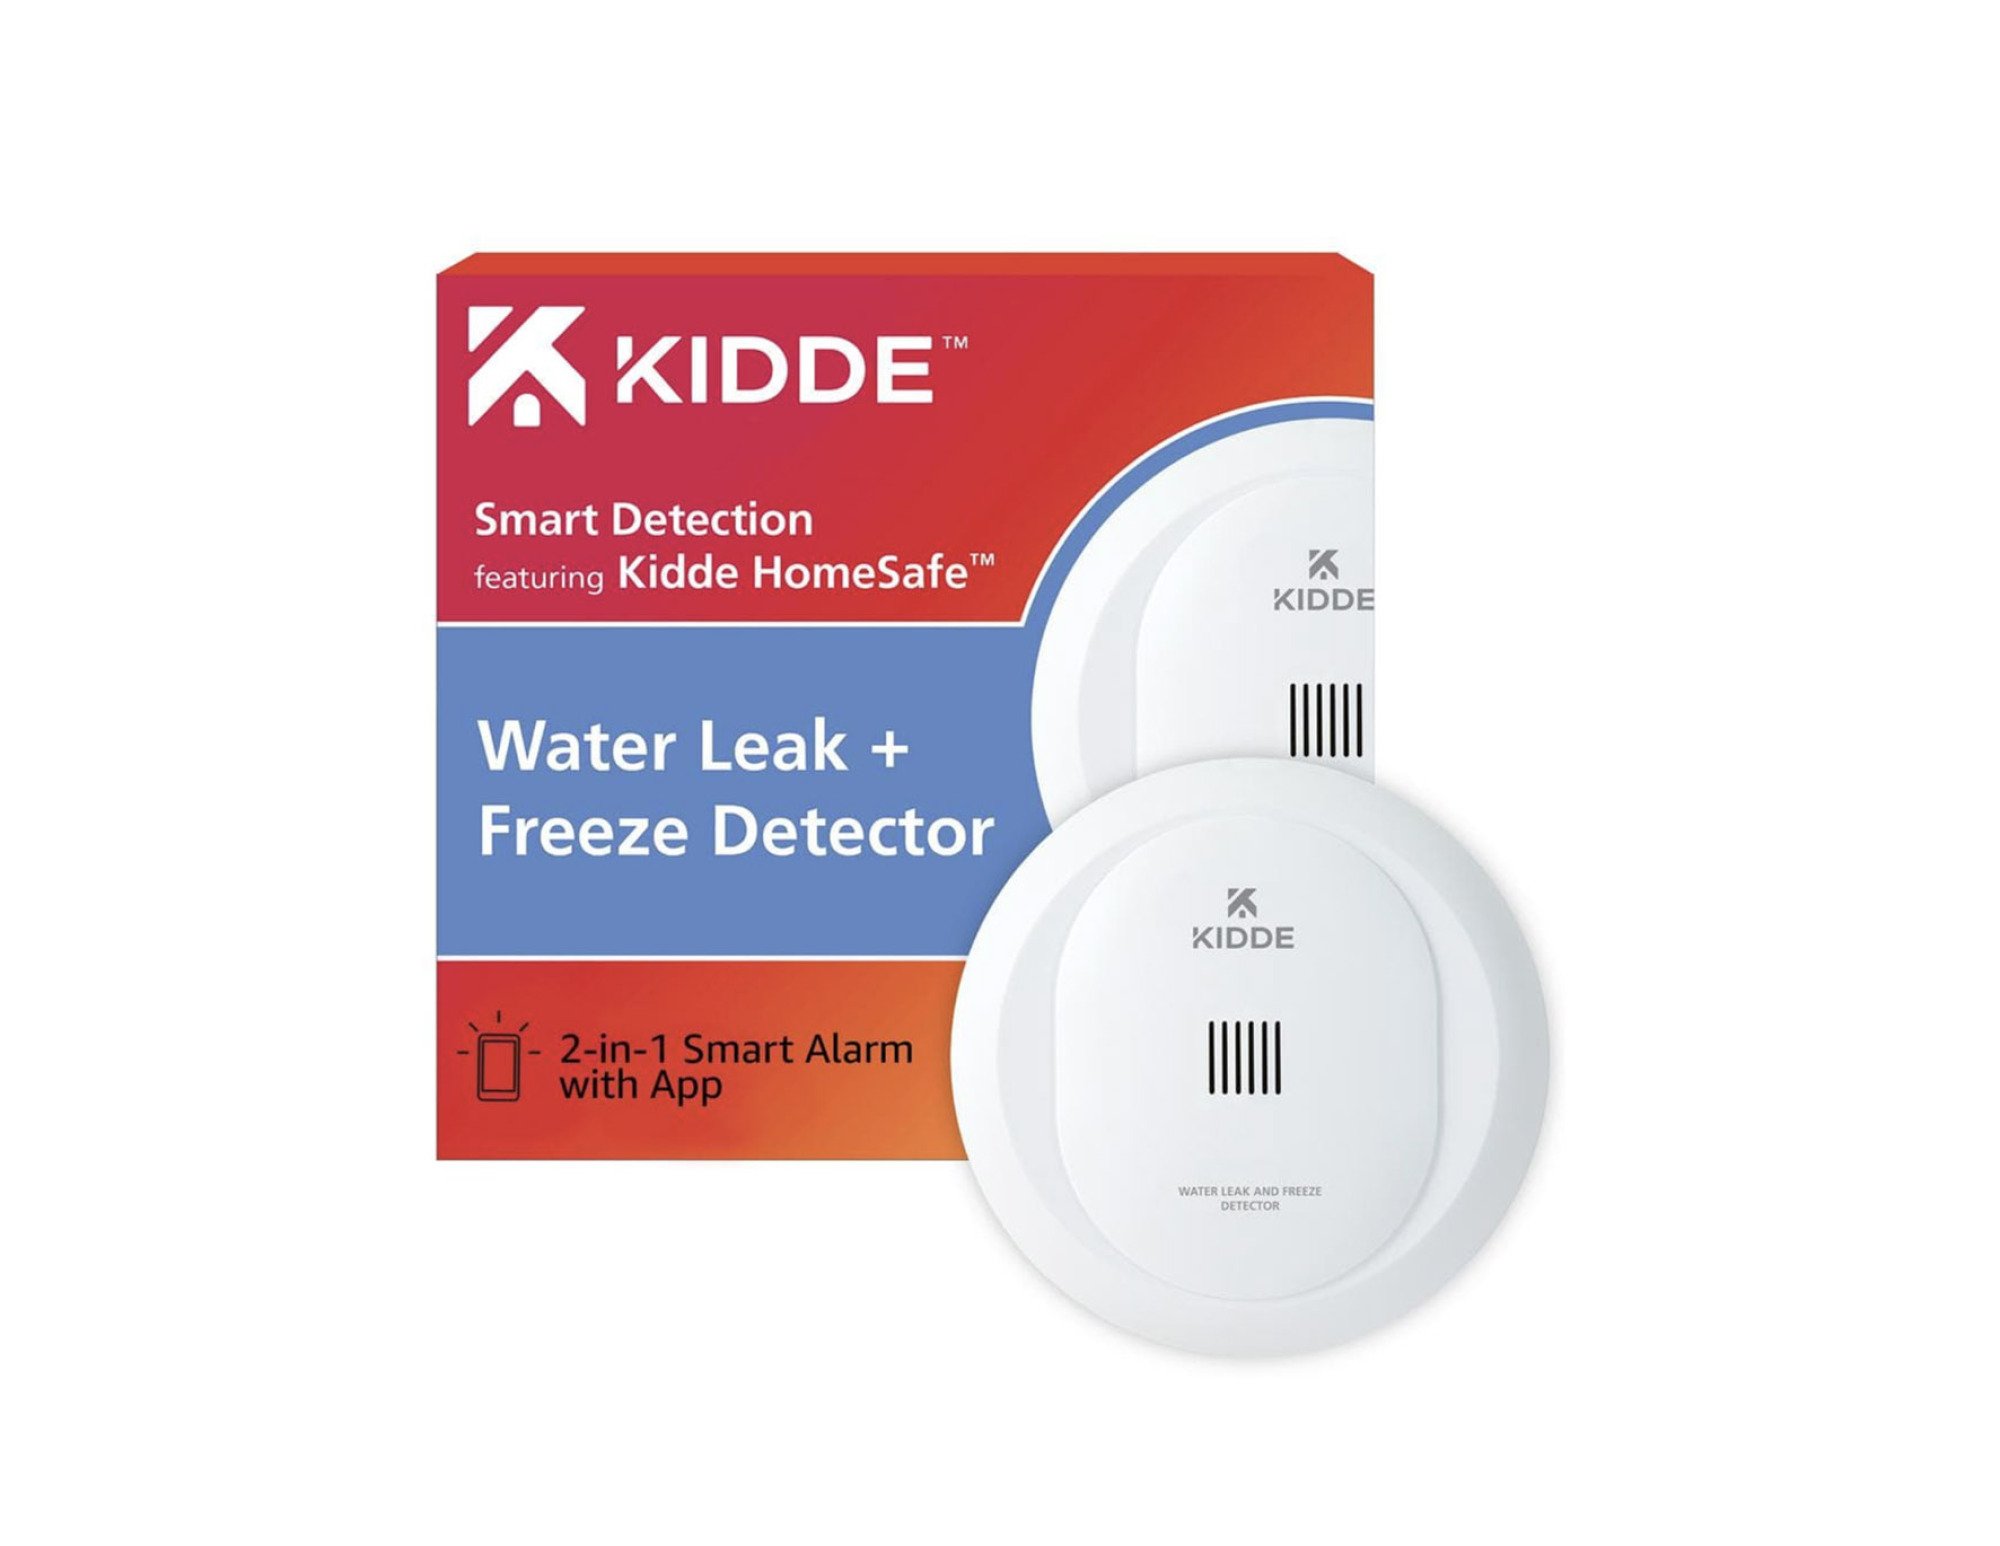 Kidde Water leak and freeze detector